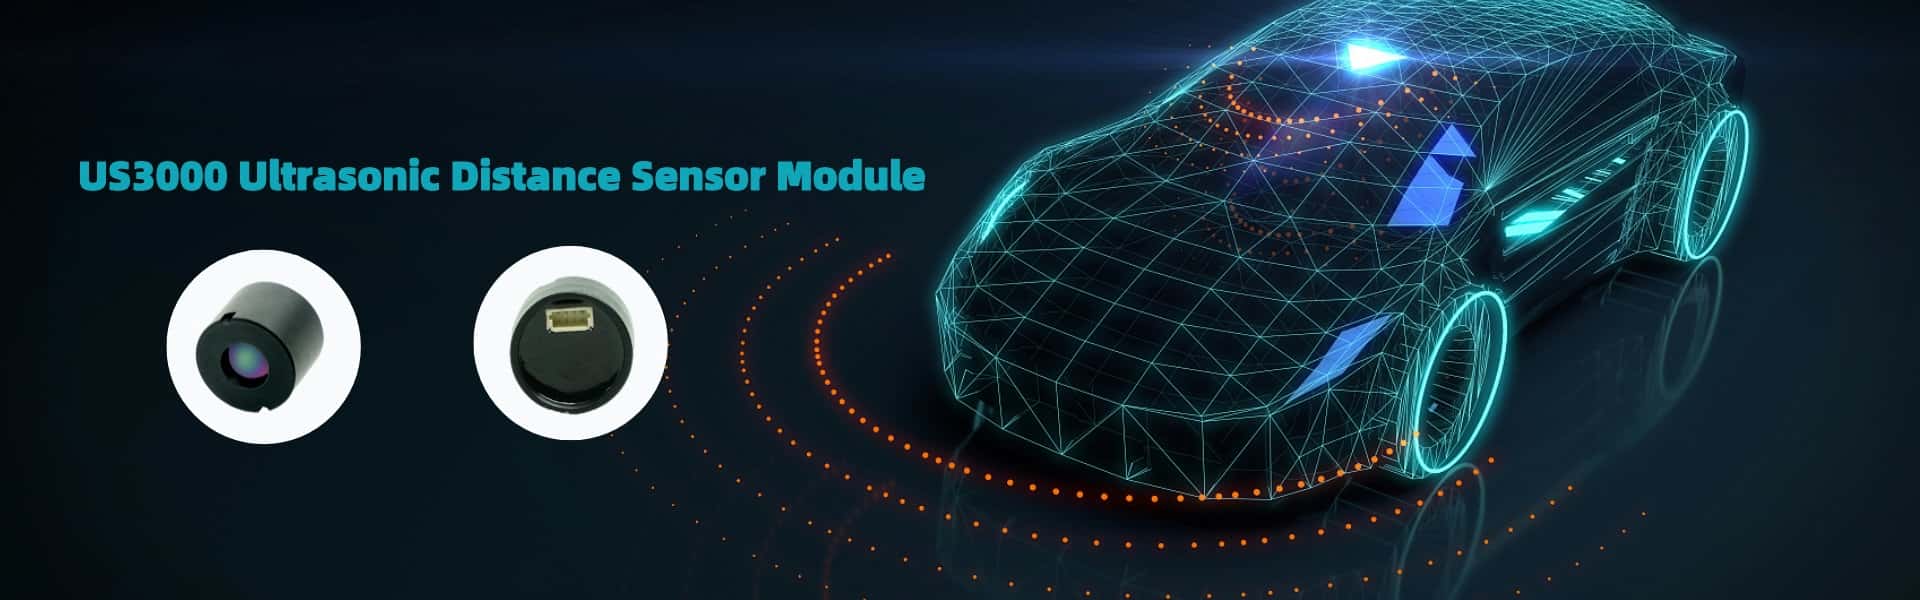 New Release! US3000 Ultrasonic Distance Sensor Module